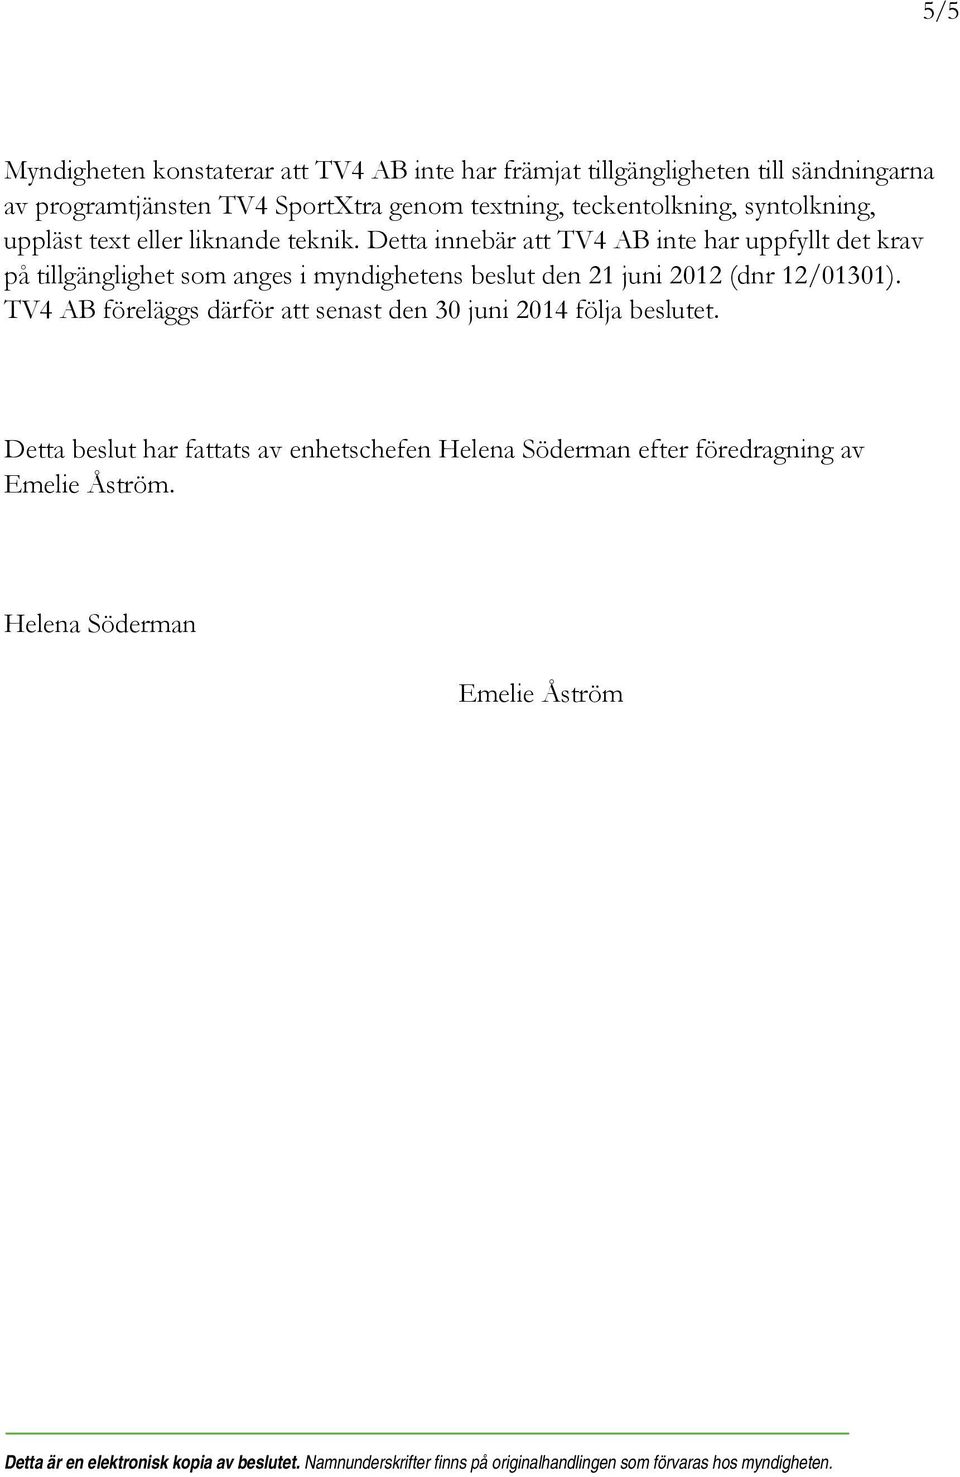 Detta innebär att TV4 AB inte har uppfyllt det krav på tillgänglighet som anges i myndighetens beslut den 21 juni 2012 (dnr 12/01301).